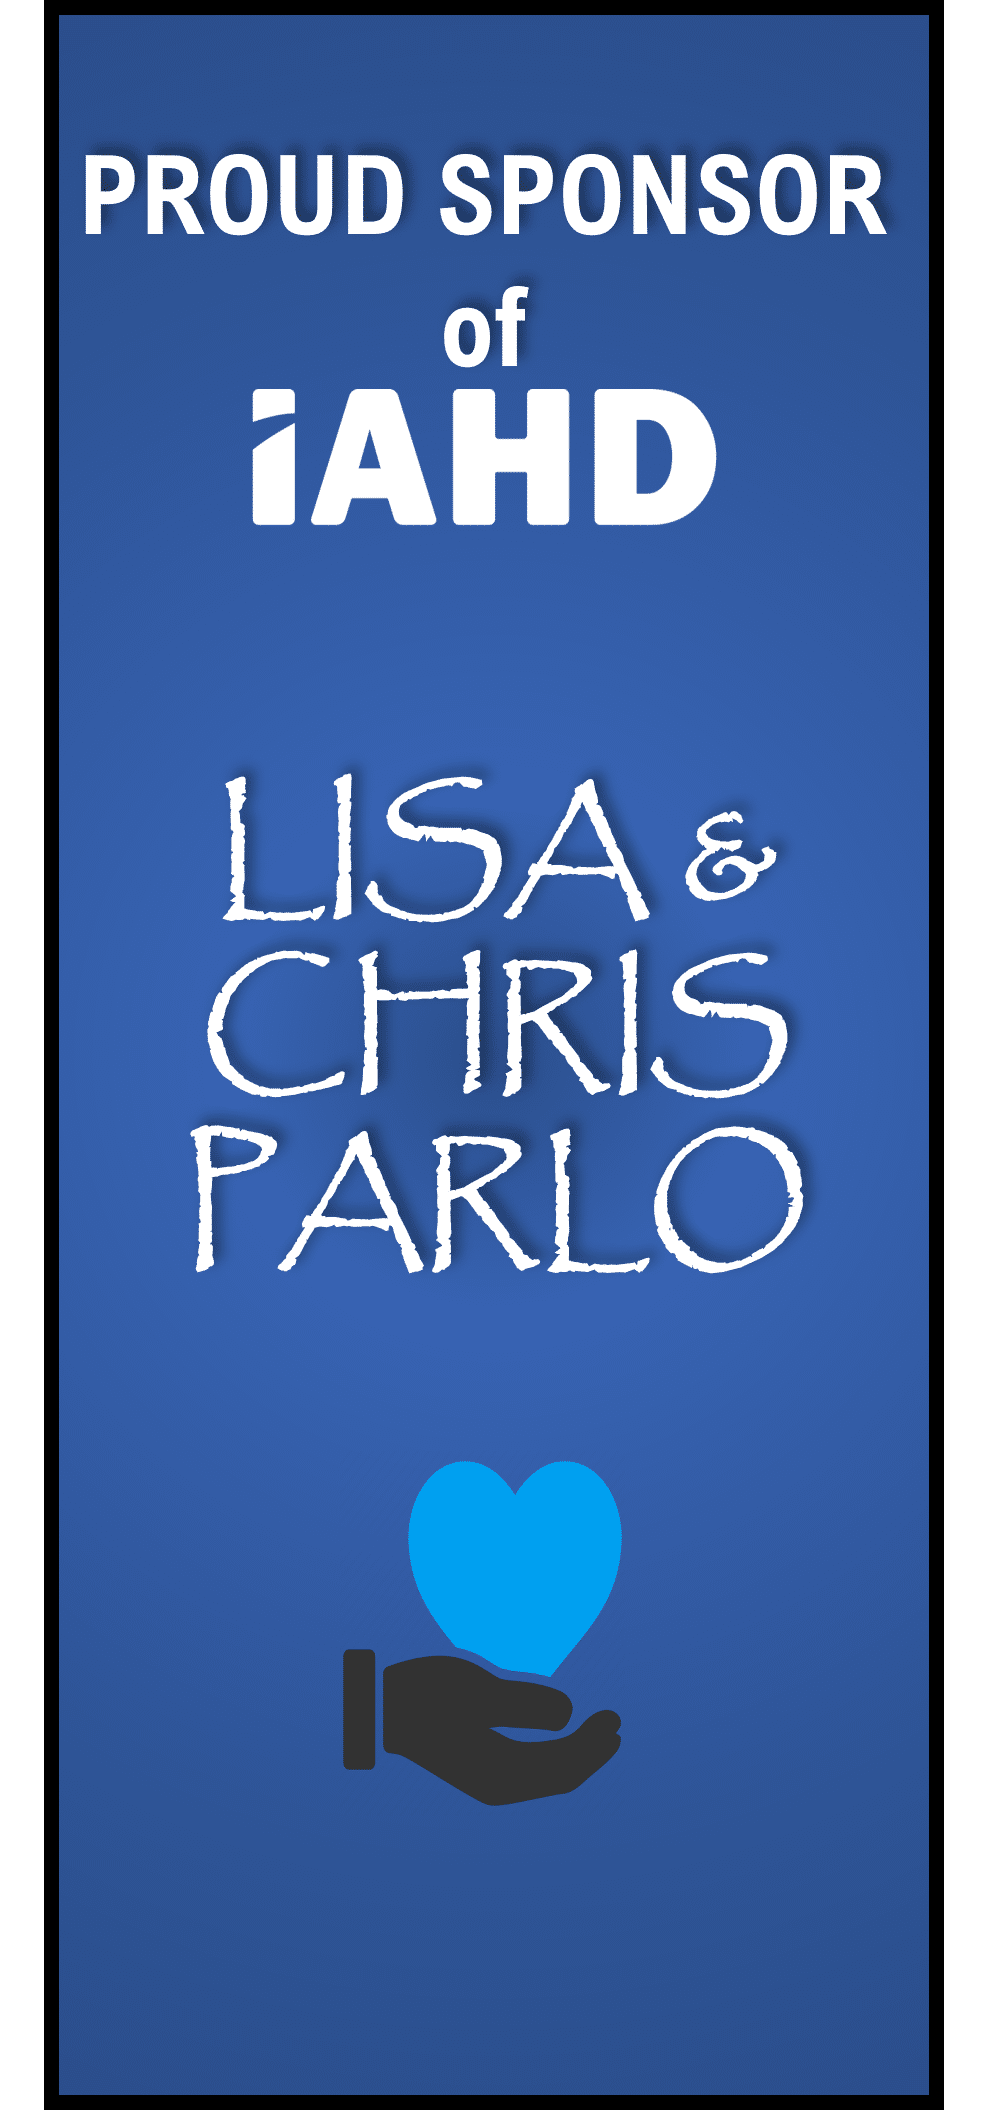 Lisa+Chris Parlo